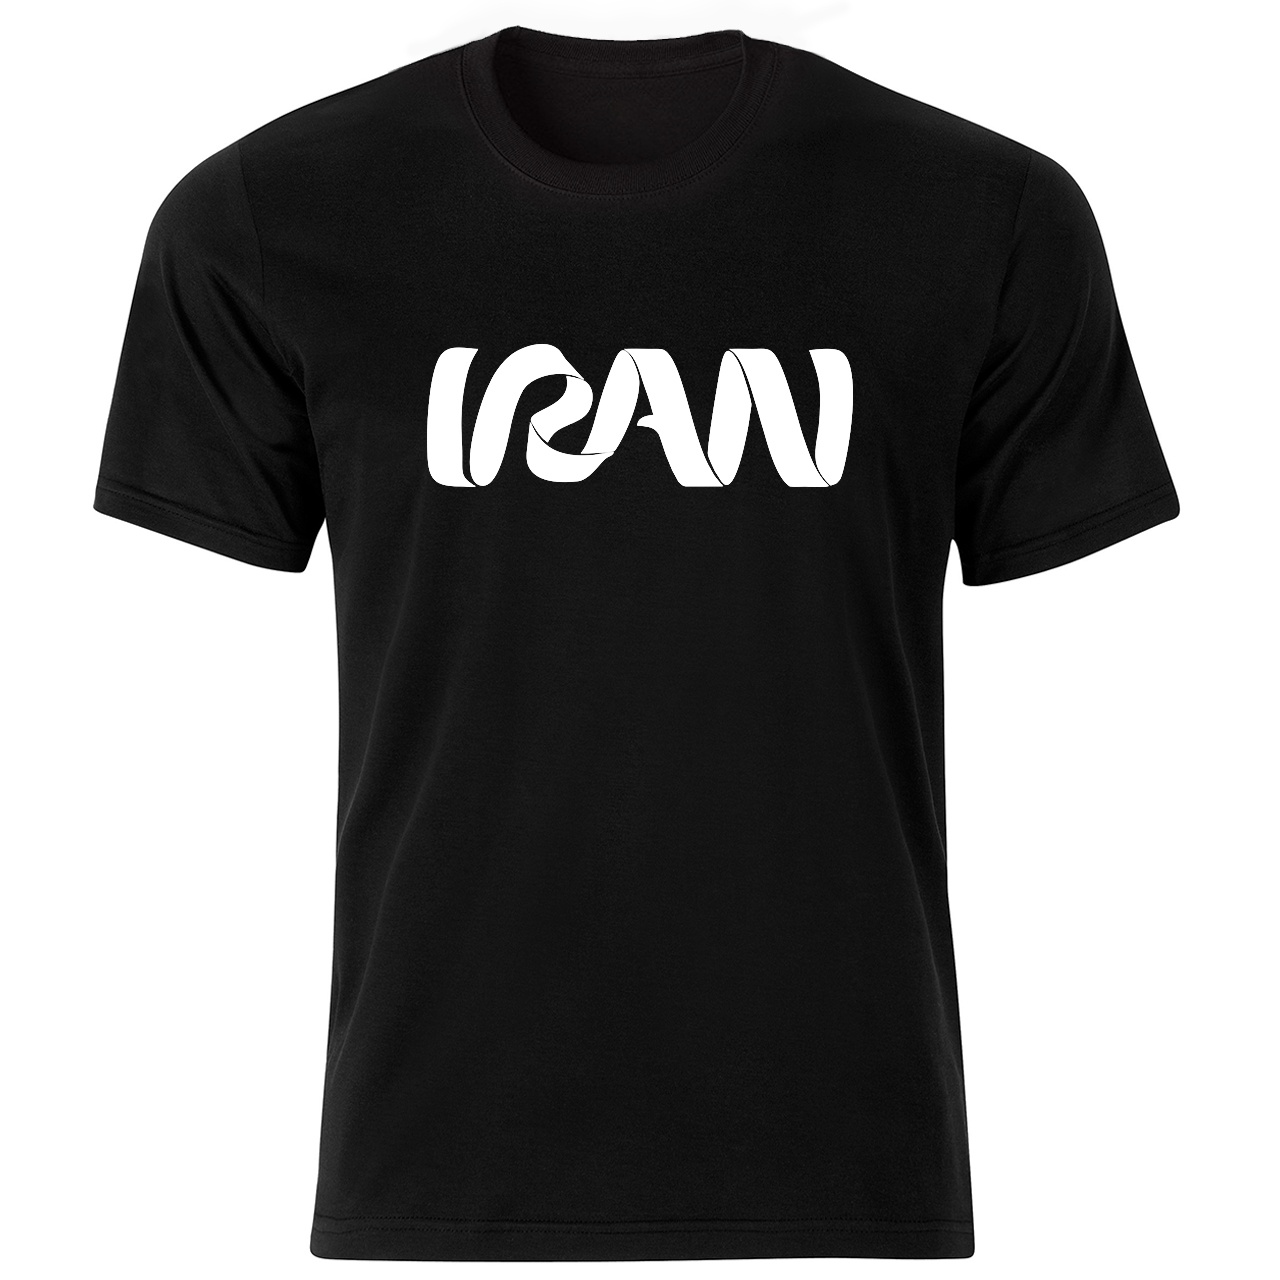 تی شرت آستین کوتاه مردانه طرح ایران کد 2132bw